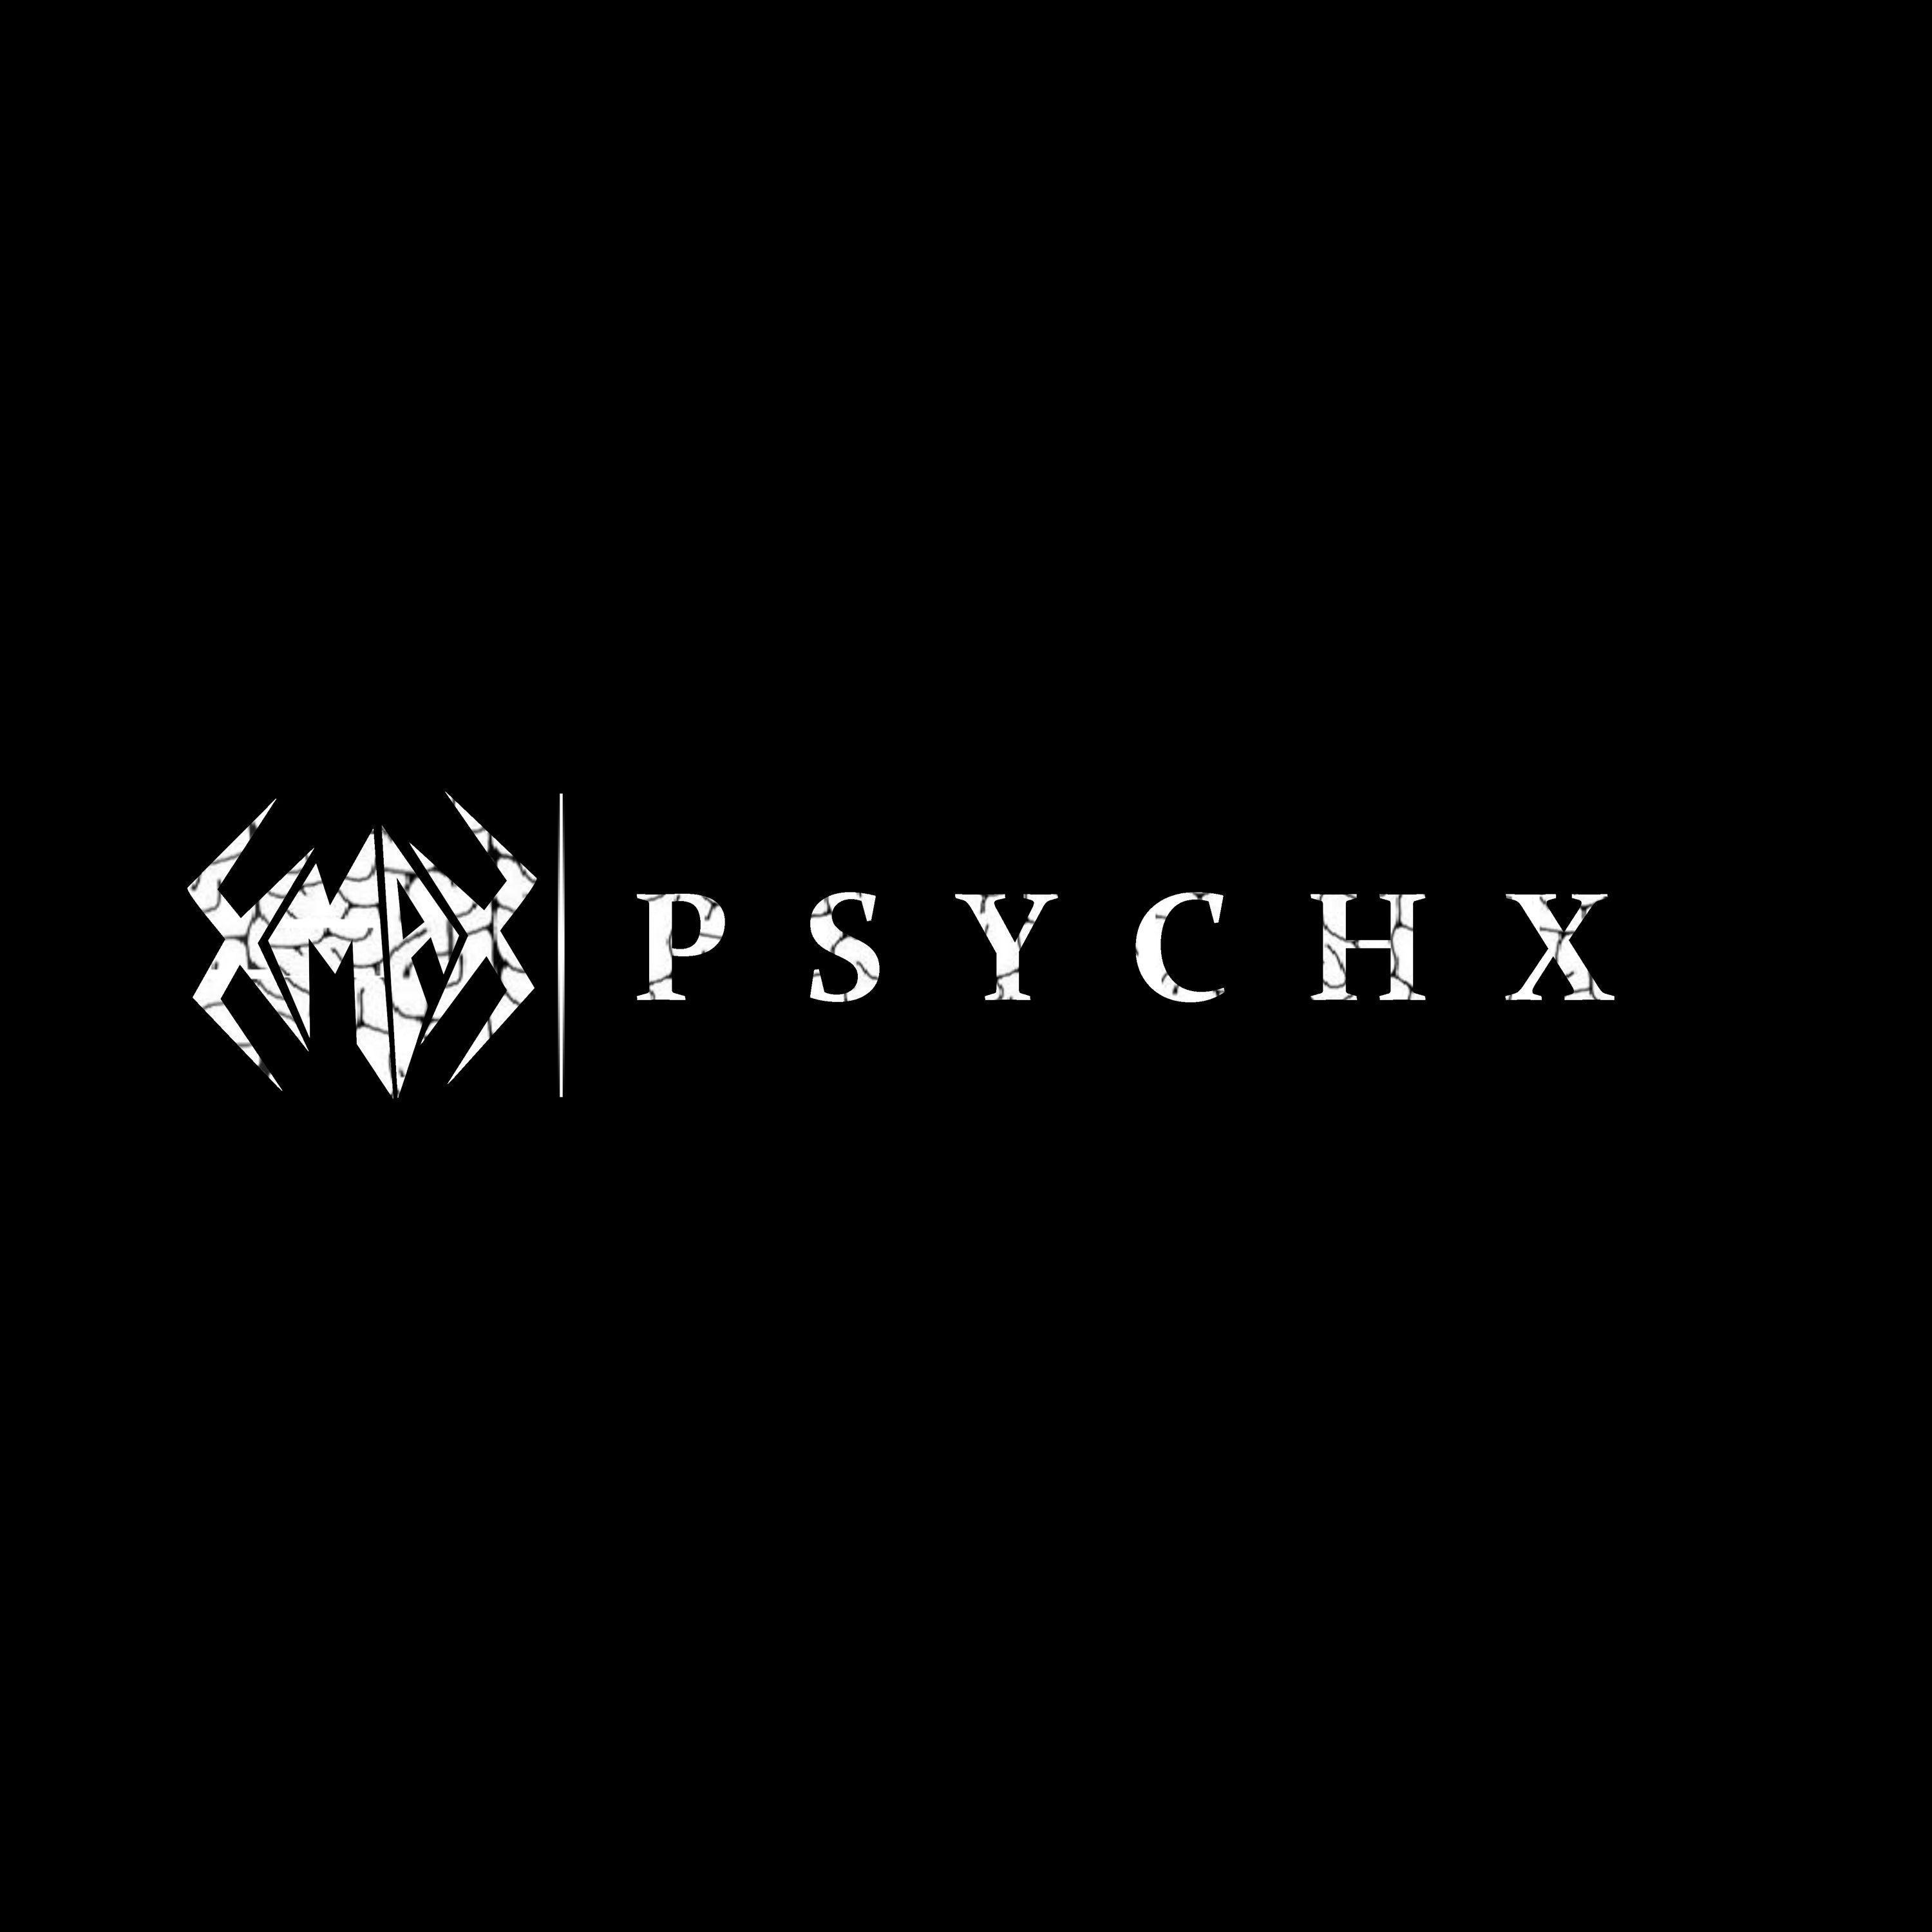 Psychx - DARK MATTER SETMIX 01 (P S Y C H X Remix)